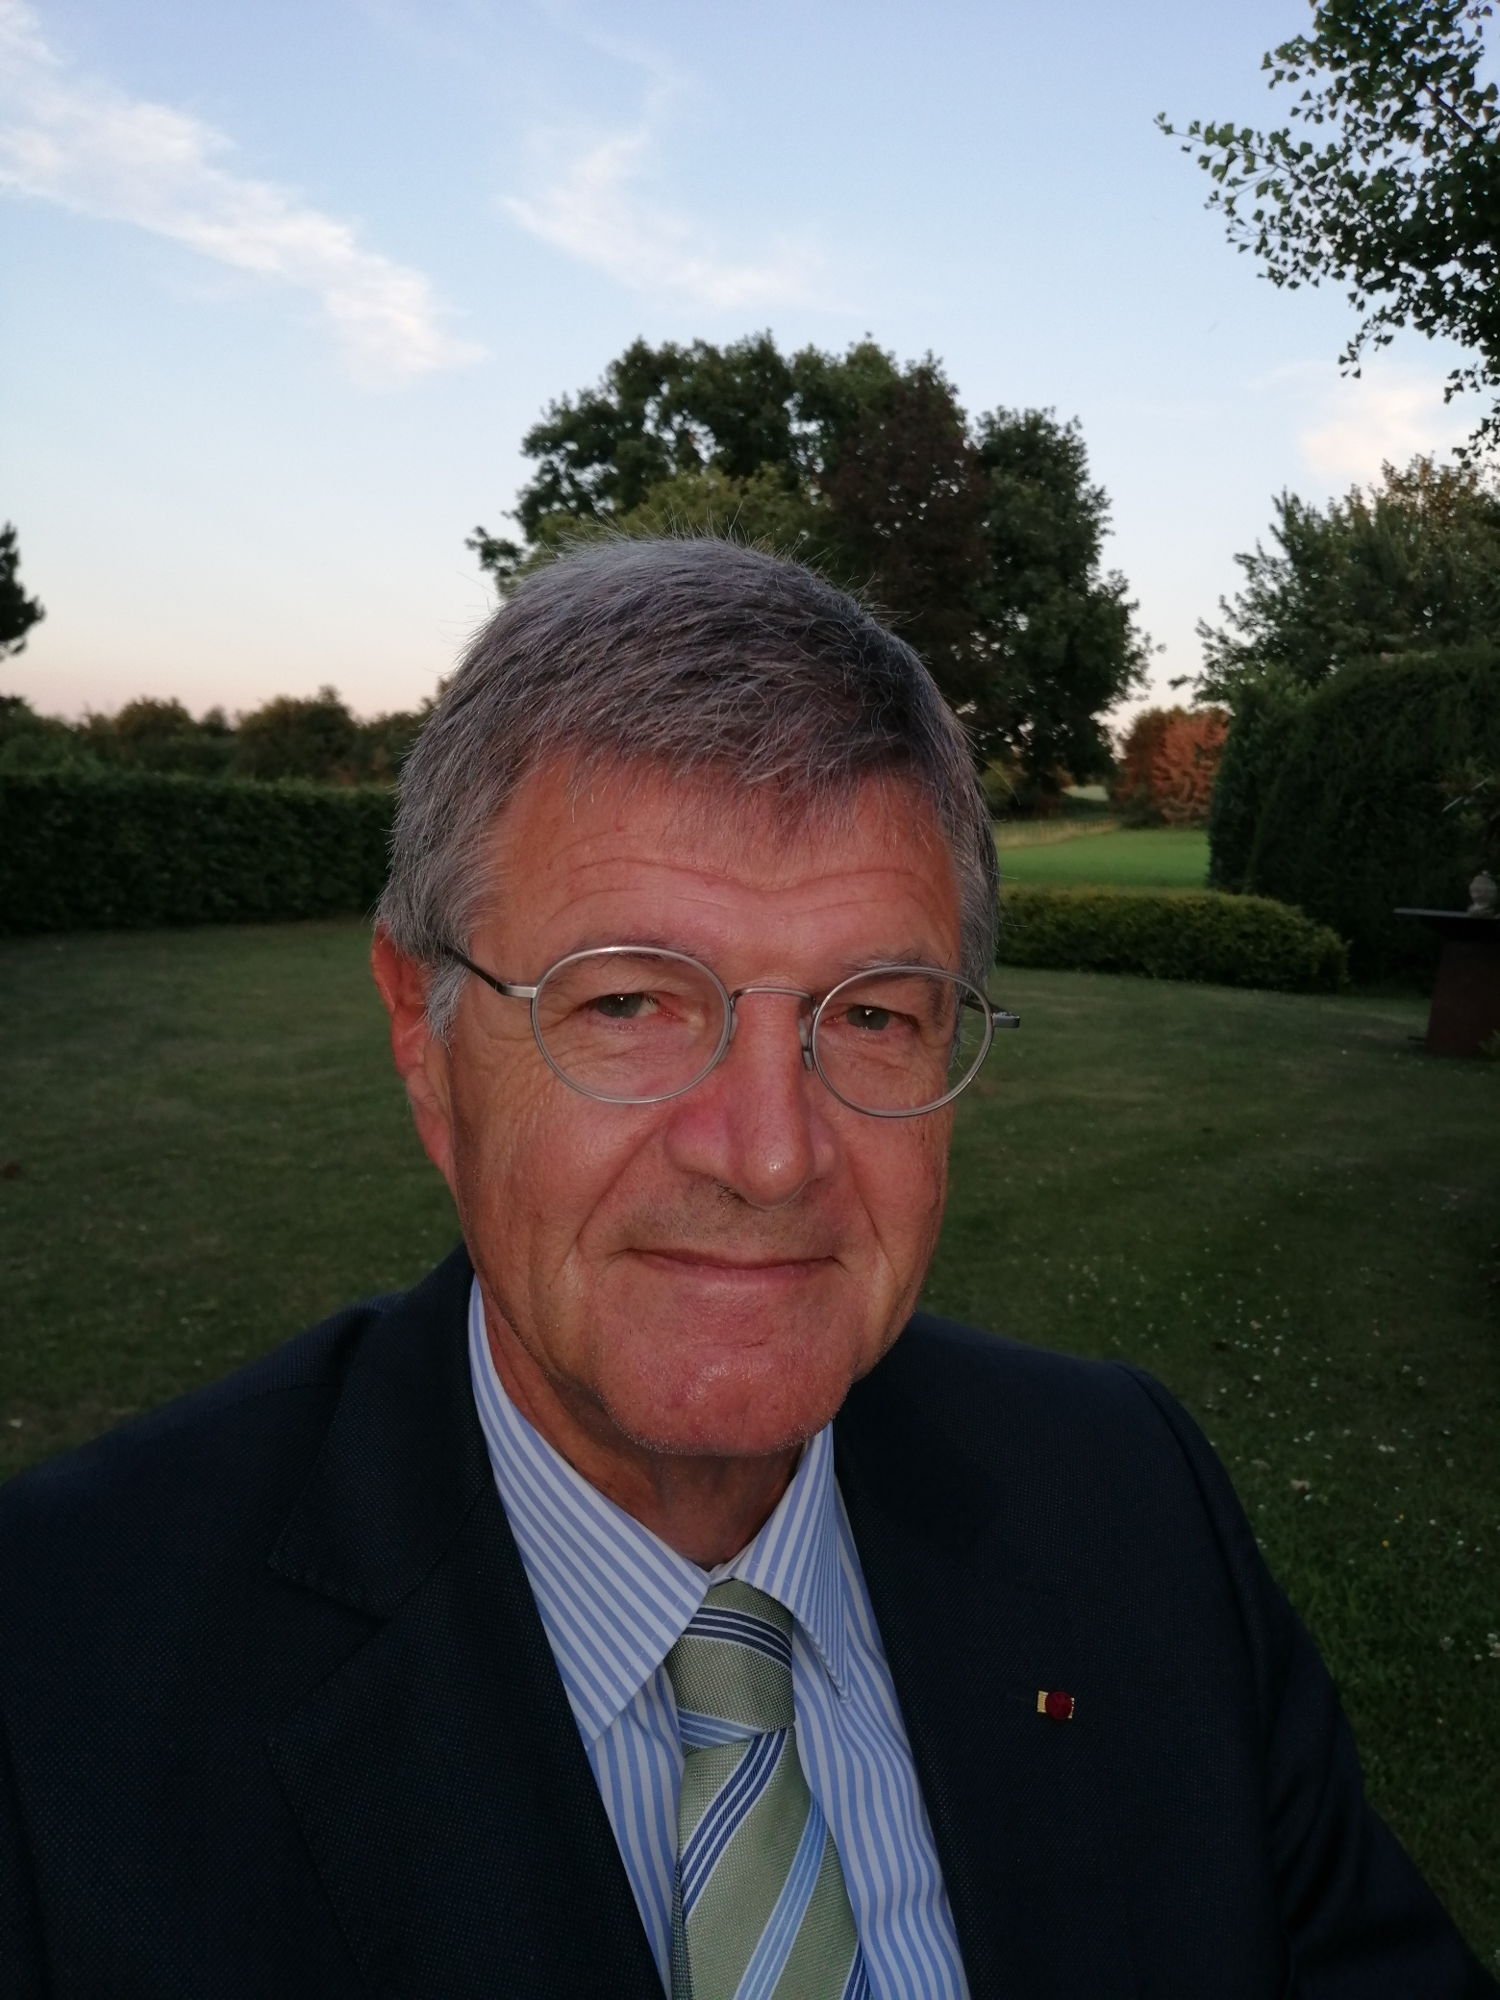 Dirk Thijs, le nouveau Premier Président du Conseil Disciplinaire